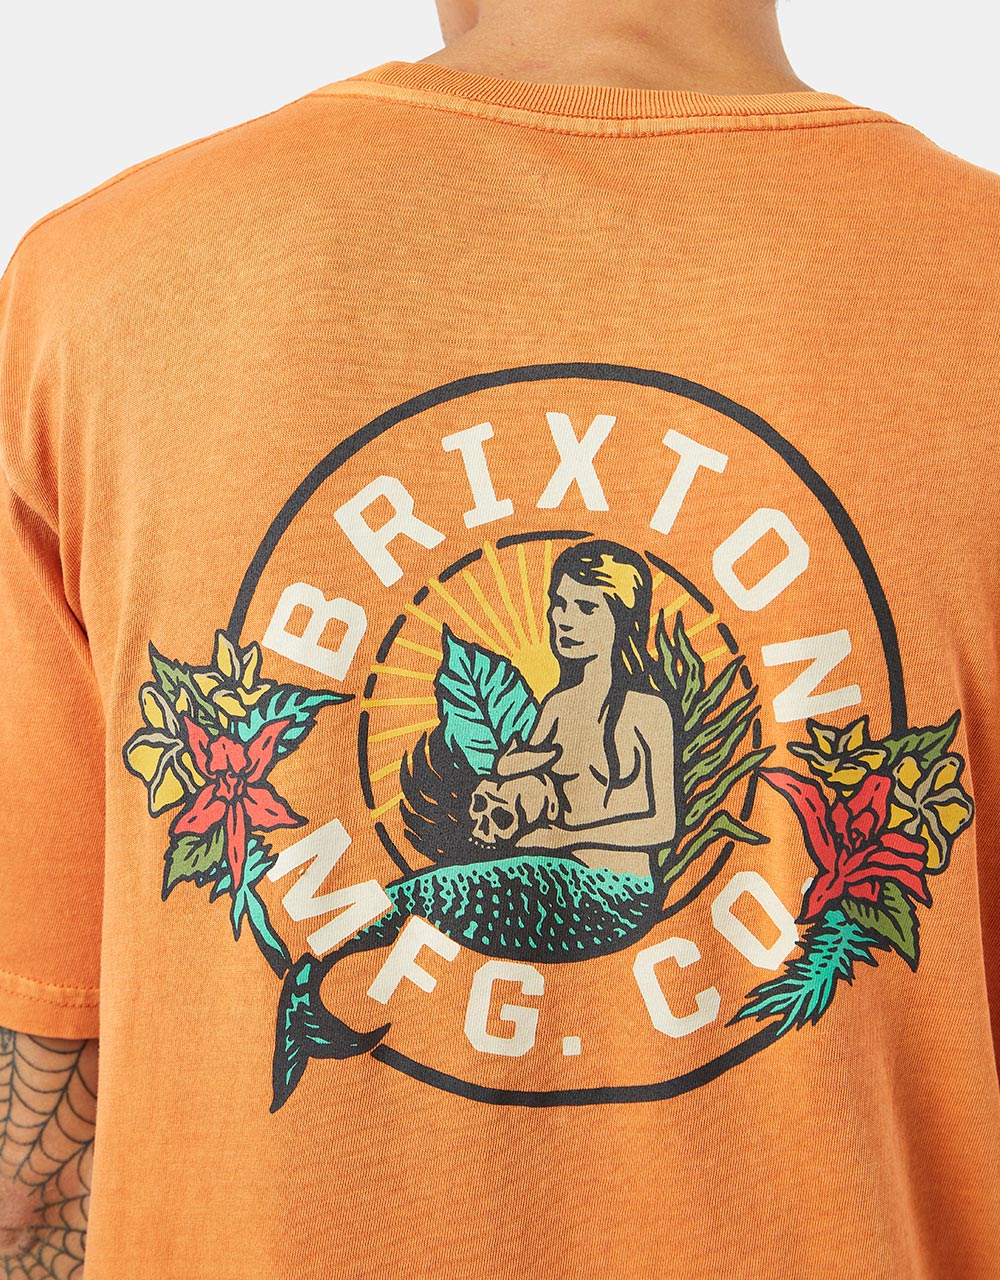 Brixton Geneva T-Shirt - Paradise Orange Worn Wash